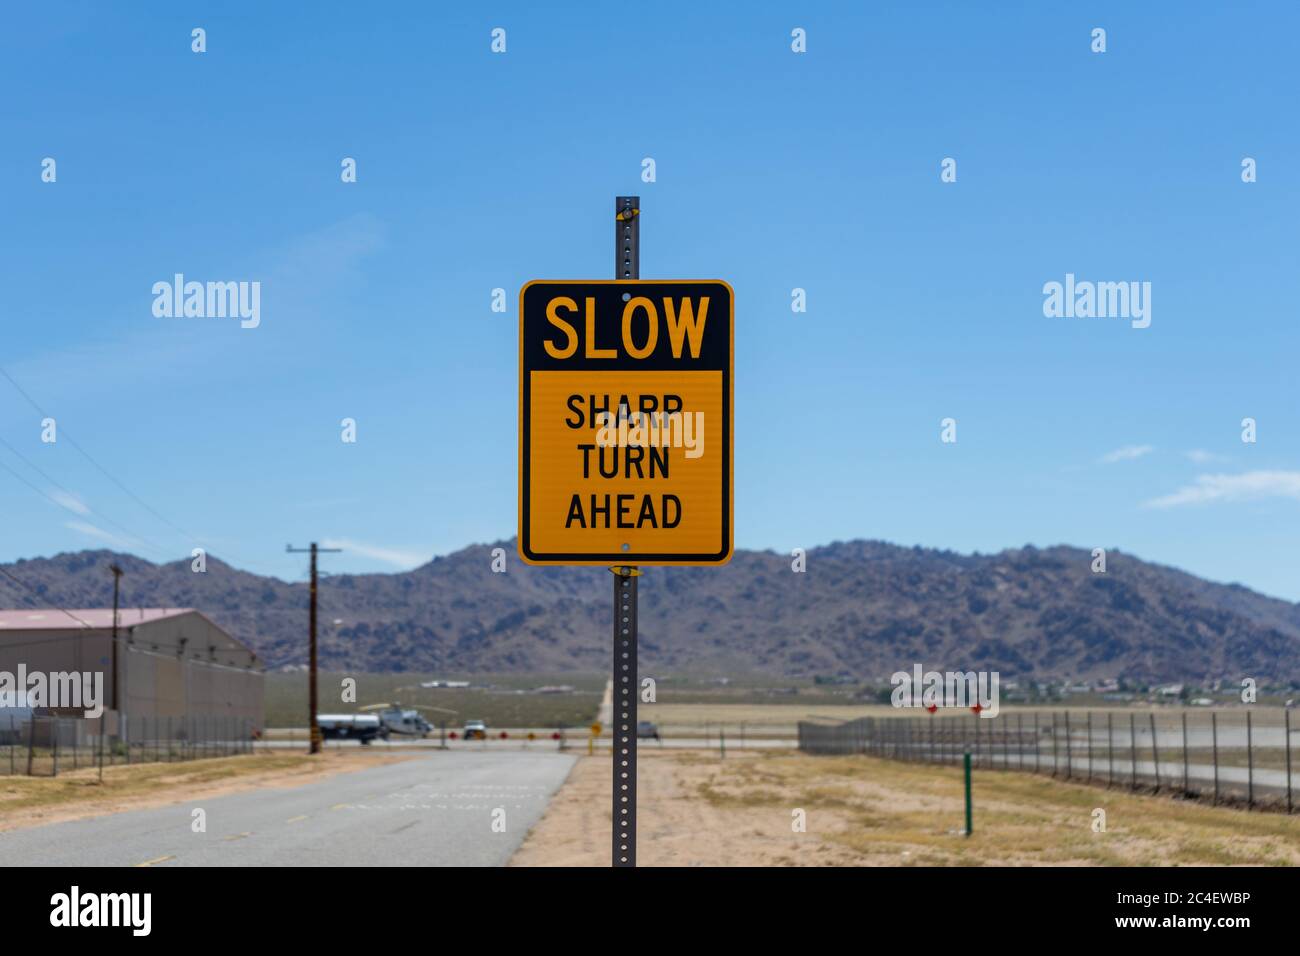 Apple Valley, CA / USA – 16. Mai 2020: Ein gelb-schwarzes Straßenschild die liest langsam Sharp Turn ahead befindet sich in Apple Valley, Kalifornien. Stockfoto